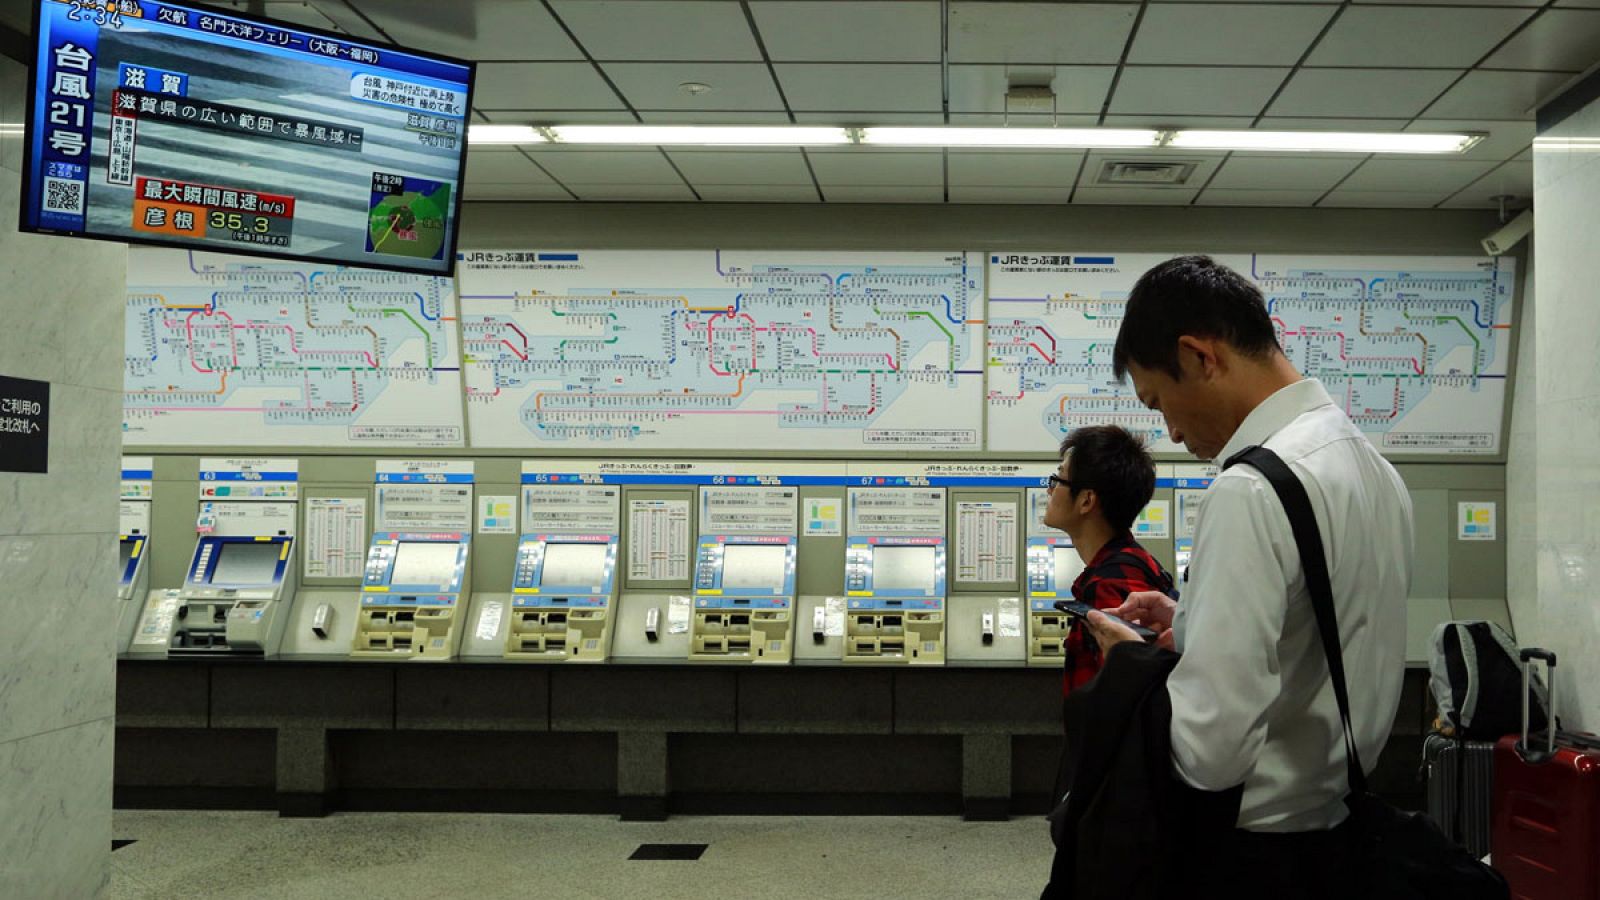 Imagen de septiembre de 2018 de dos pasajeros esperando el restablecimiento del servicio de trenes de la línea JR después de su cancelación como consecuencia del tifón Jebi, en Osaka, Japón.